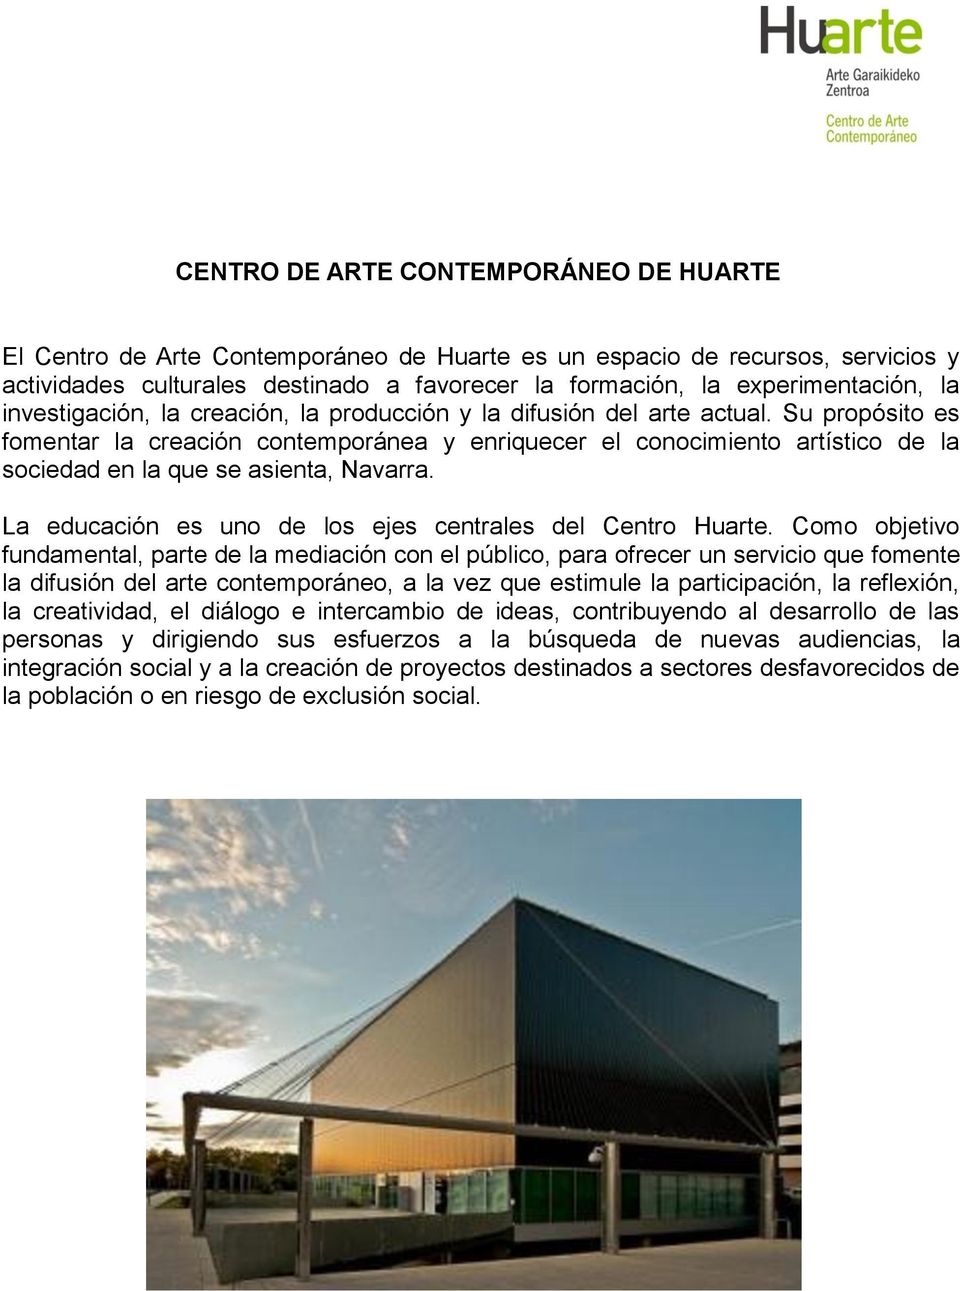 Su propósito es fomentar la creación contemporánea y enriquecer el conocimiento artístico de la sociedad en la que se asienta, Navarra. La educación es uno de los ejes centrales del Centro Huarte.